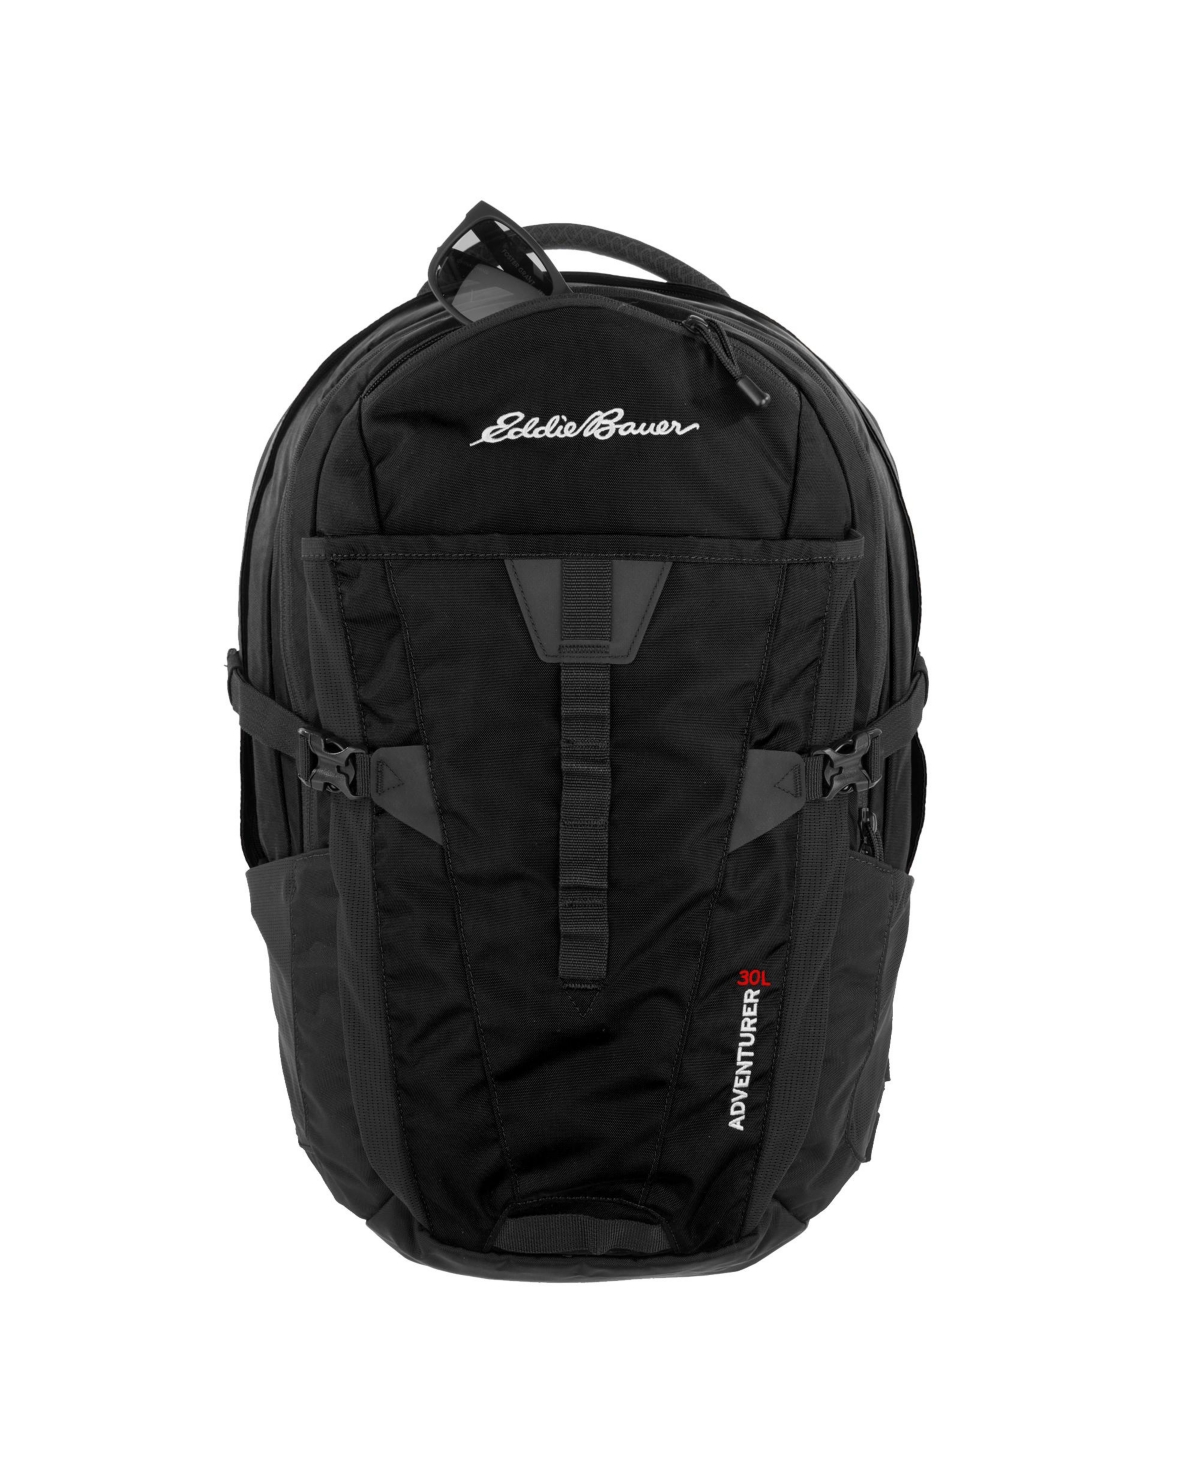 Eddie Bauer Adventurer 30 Liters Backpack In Black